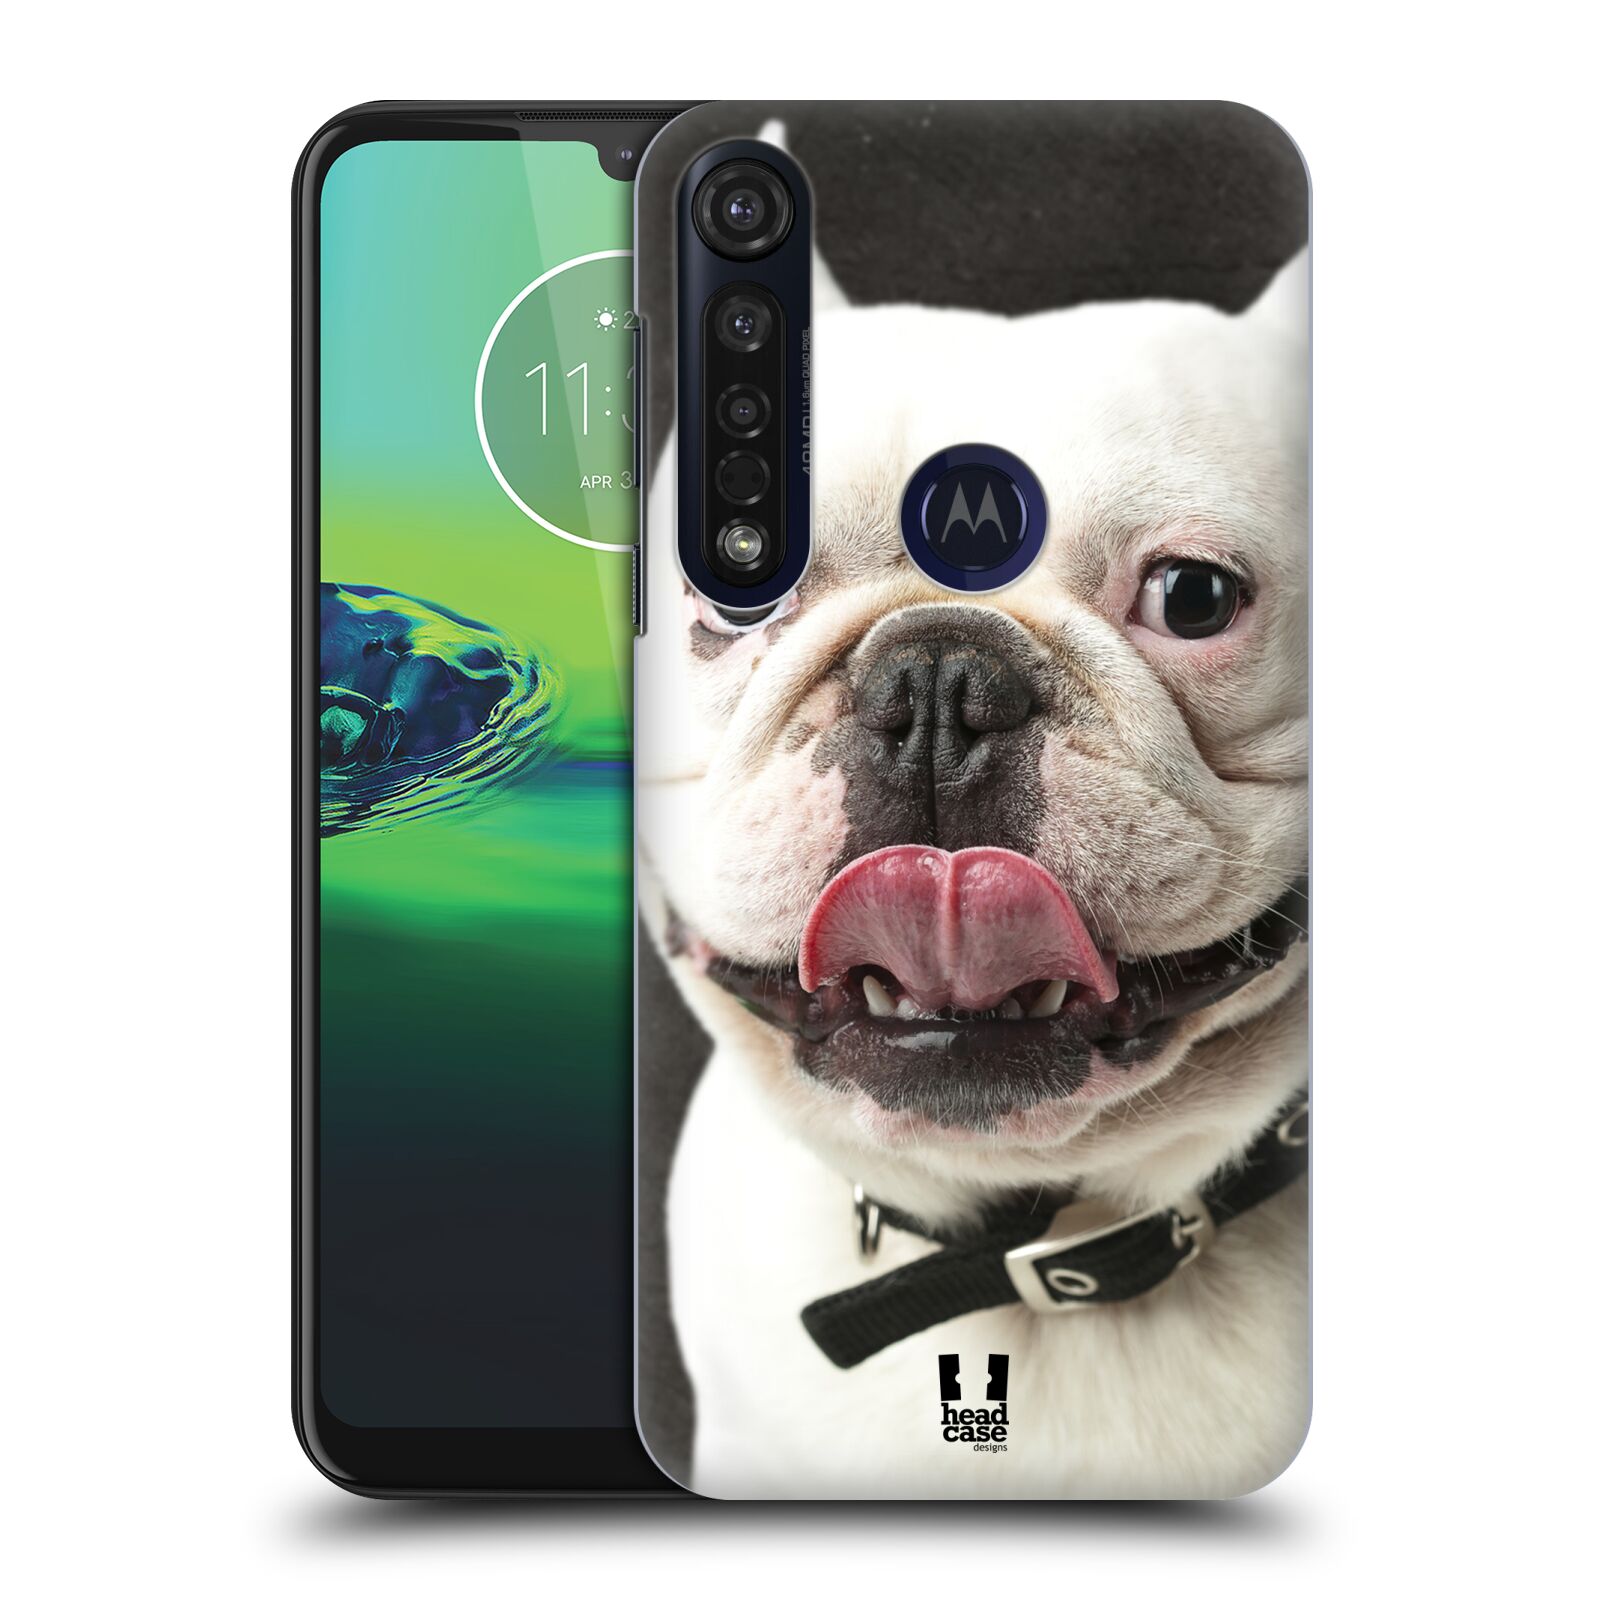 Pouzdro na mobil Motorola Moto G8 PLUS - HEAD CASE - vzor Legrační zvířátka pejsek s vyplazeným jazykem BULDOK